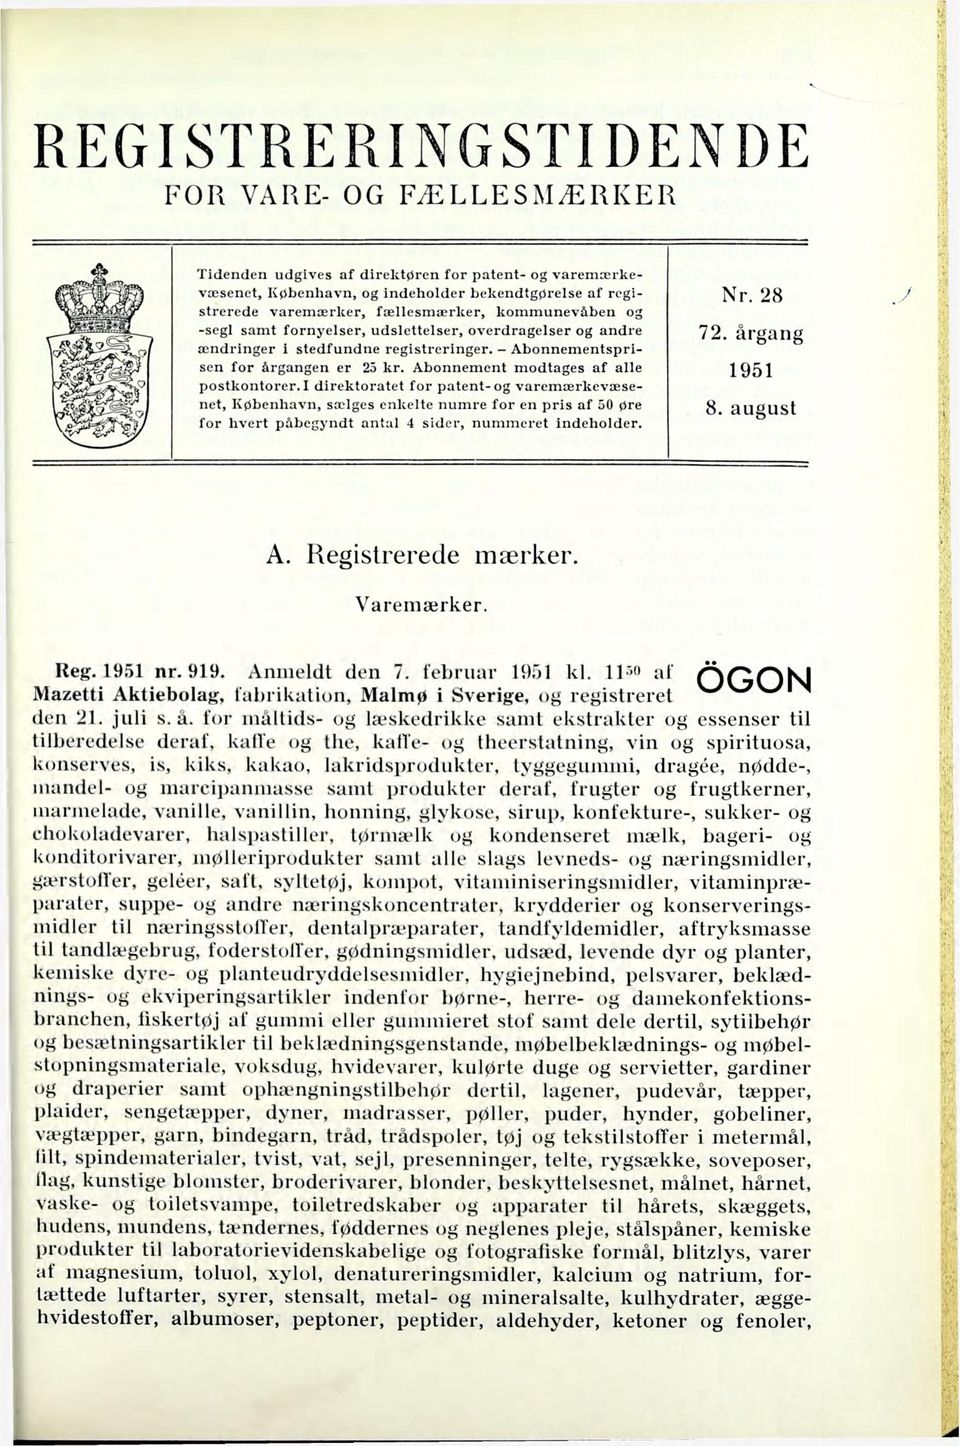 I direktoratet for patent-og varemærkevæsenet, København, sælges enkelte numre for en pris af 50 øre for hvert påbegyndt antal 4 sider, nummeret indeholder. Nr. 28 72. årgang 1951 8. august A.